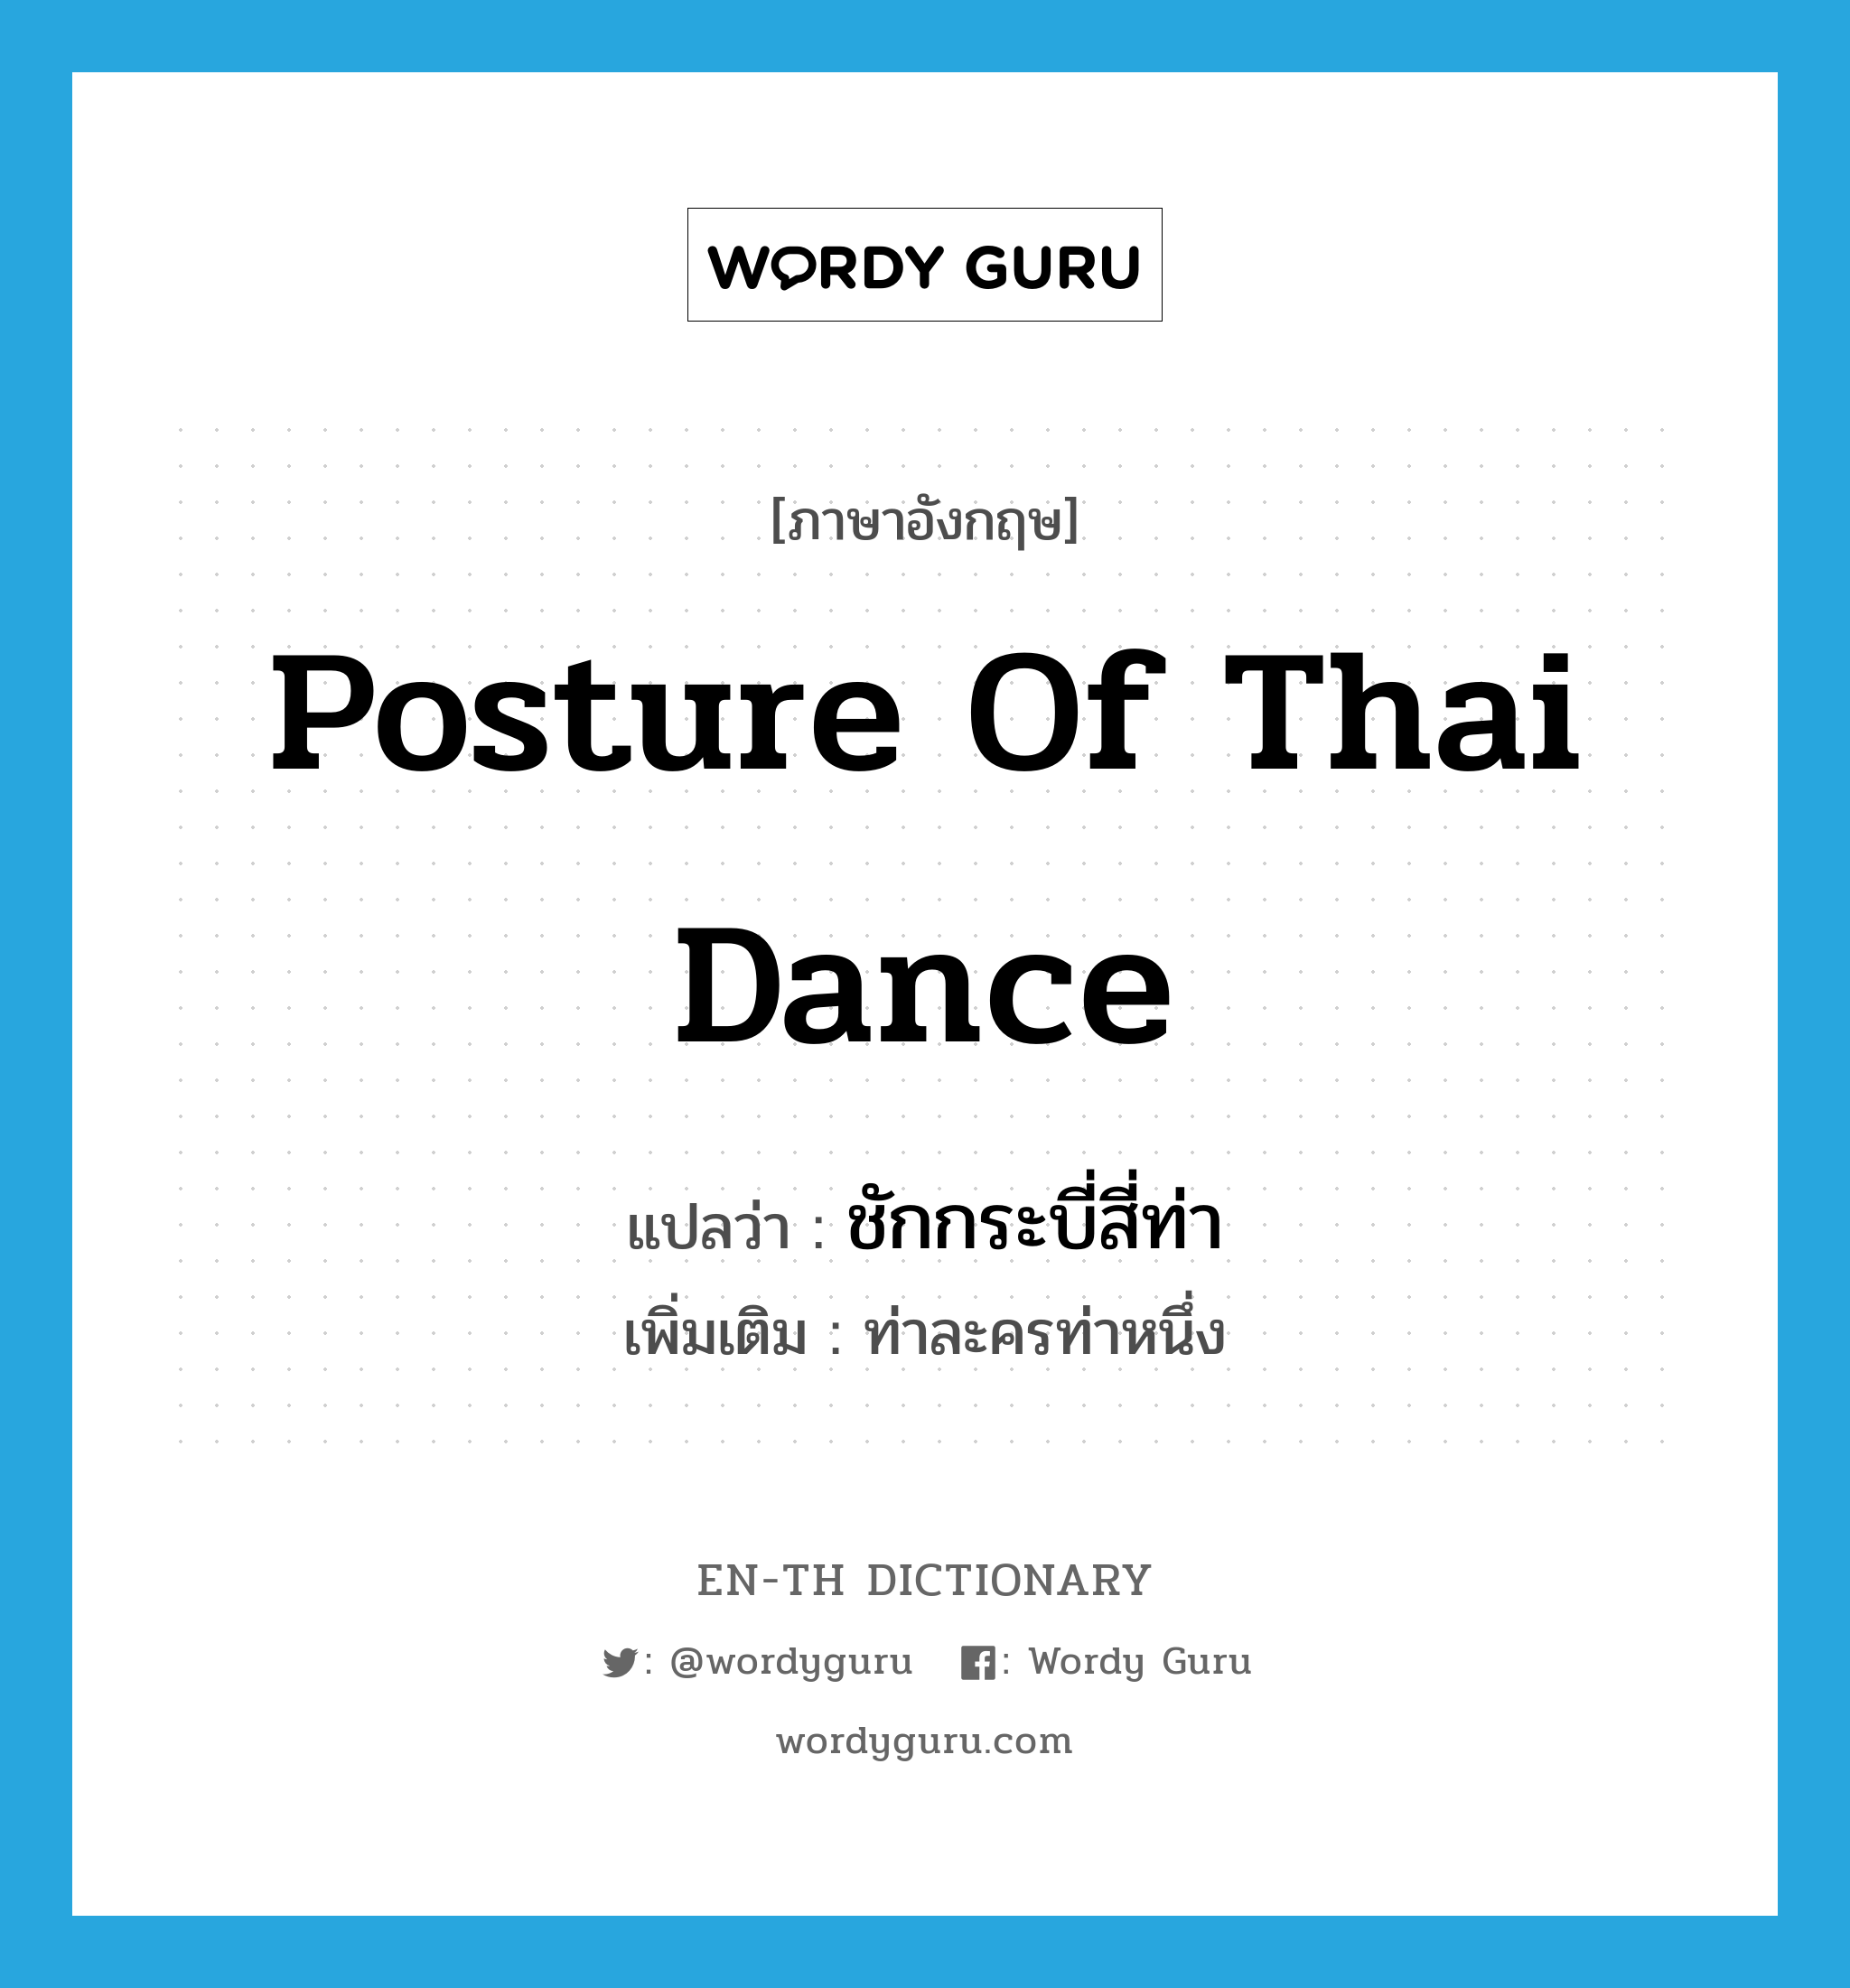 ชักกระบี่สี่ท่า ภาษาอังกฤษ?, คำศัพท์ภาษาอังกฤษ ชักกระบี่สี่ท่า แปลว่า posture of Thai dance ประเภท N เพิ่มเติม ท่าละครท่าหนึ่ง หมวด N